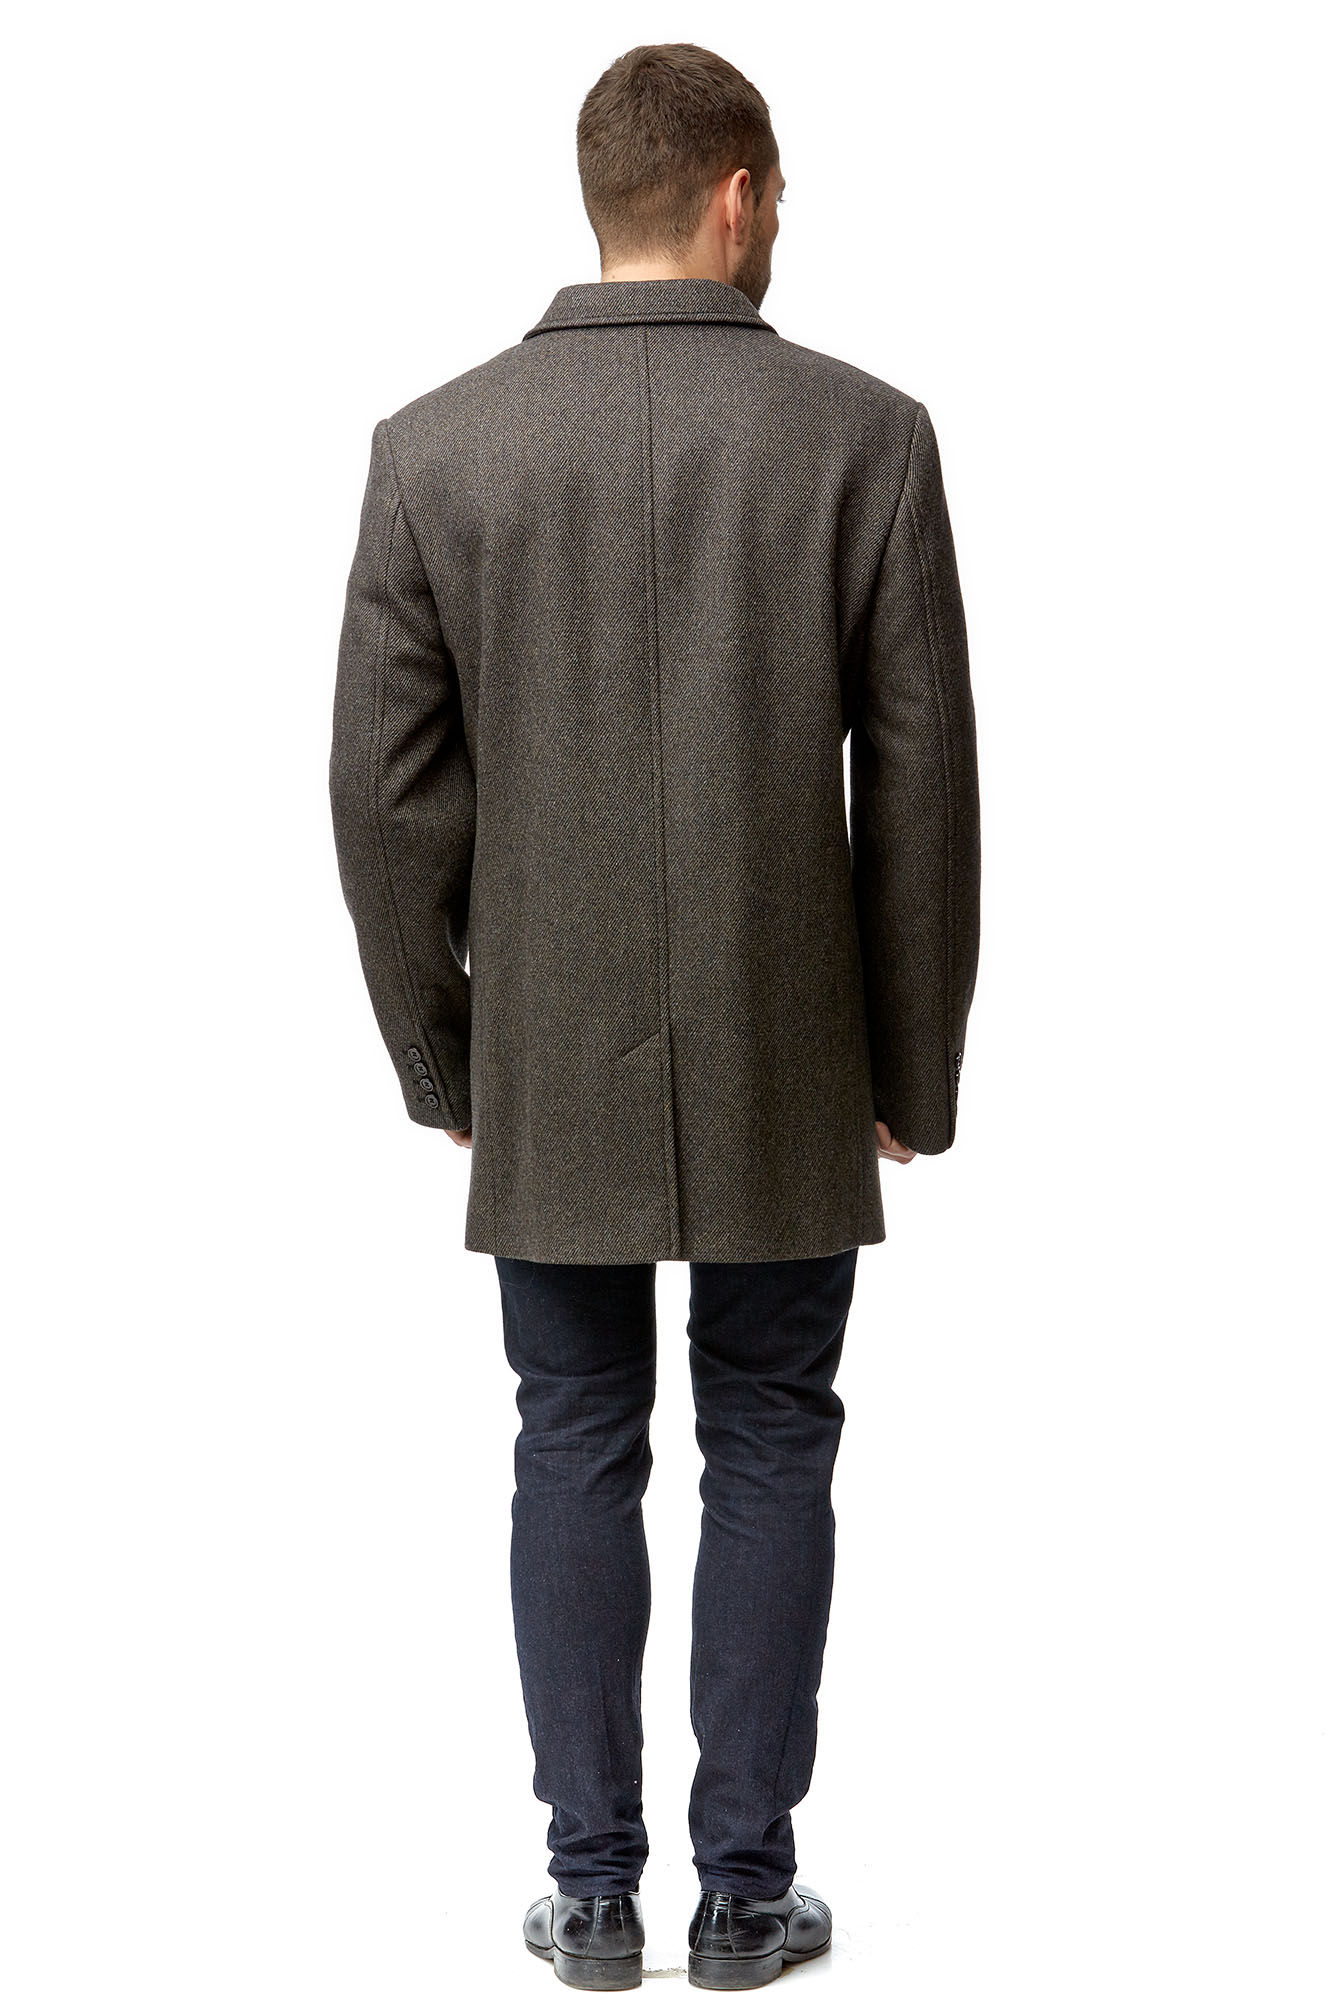 Мужское пальто из текстиля с воротником 8001788-3